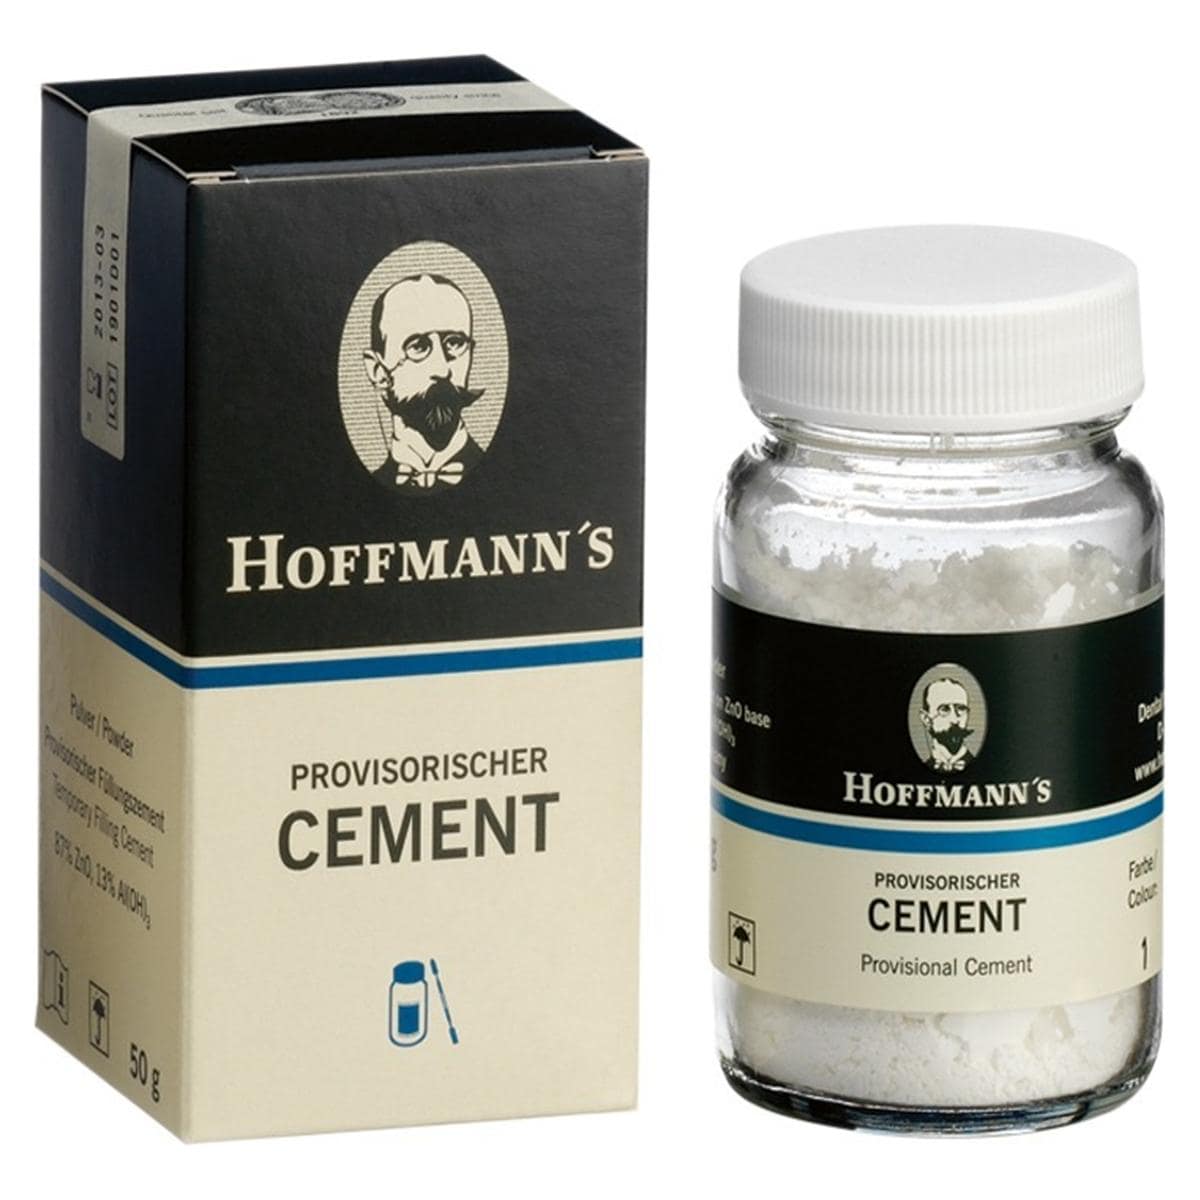 Hoffmann's PROVISORISCHER CEMENT - Pulver, Packung 50 g